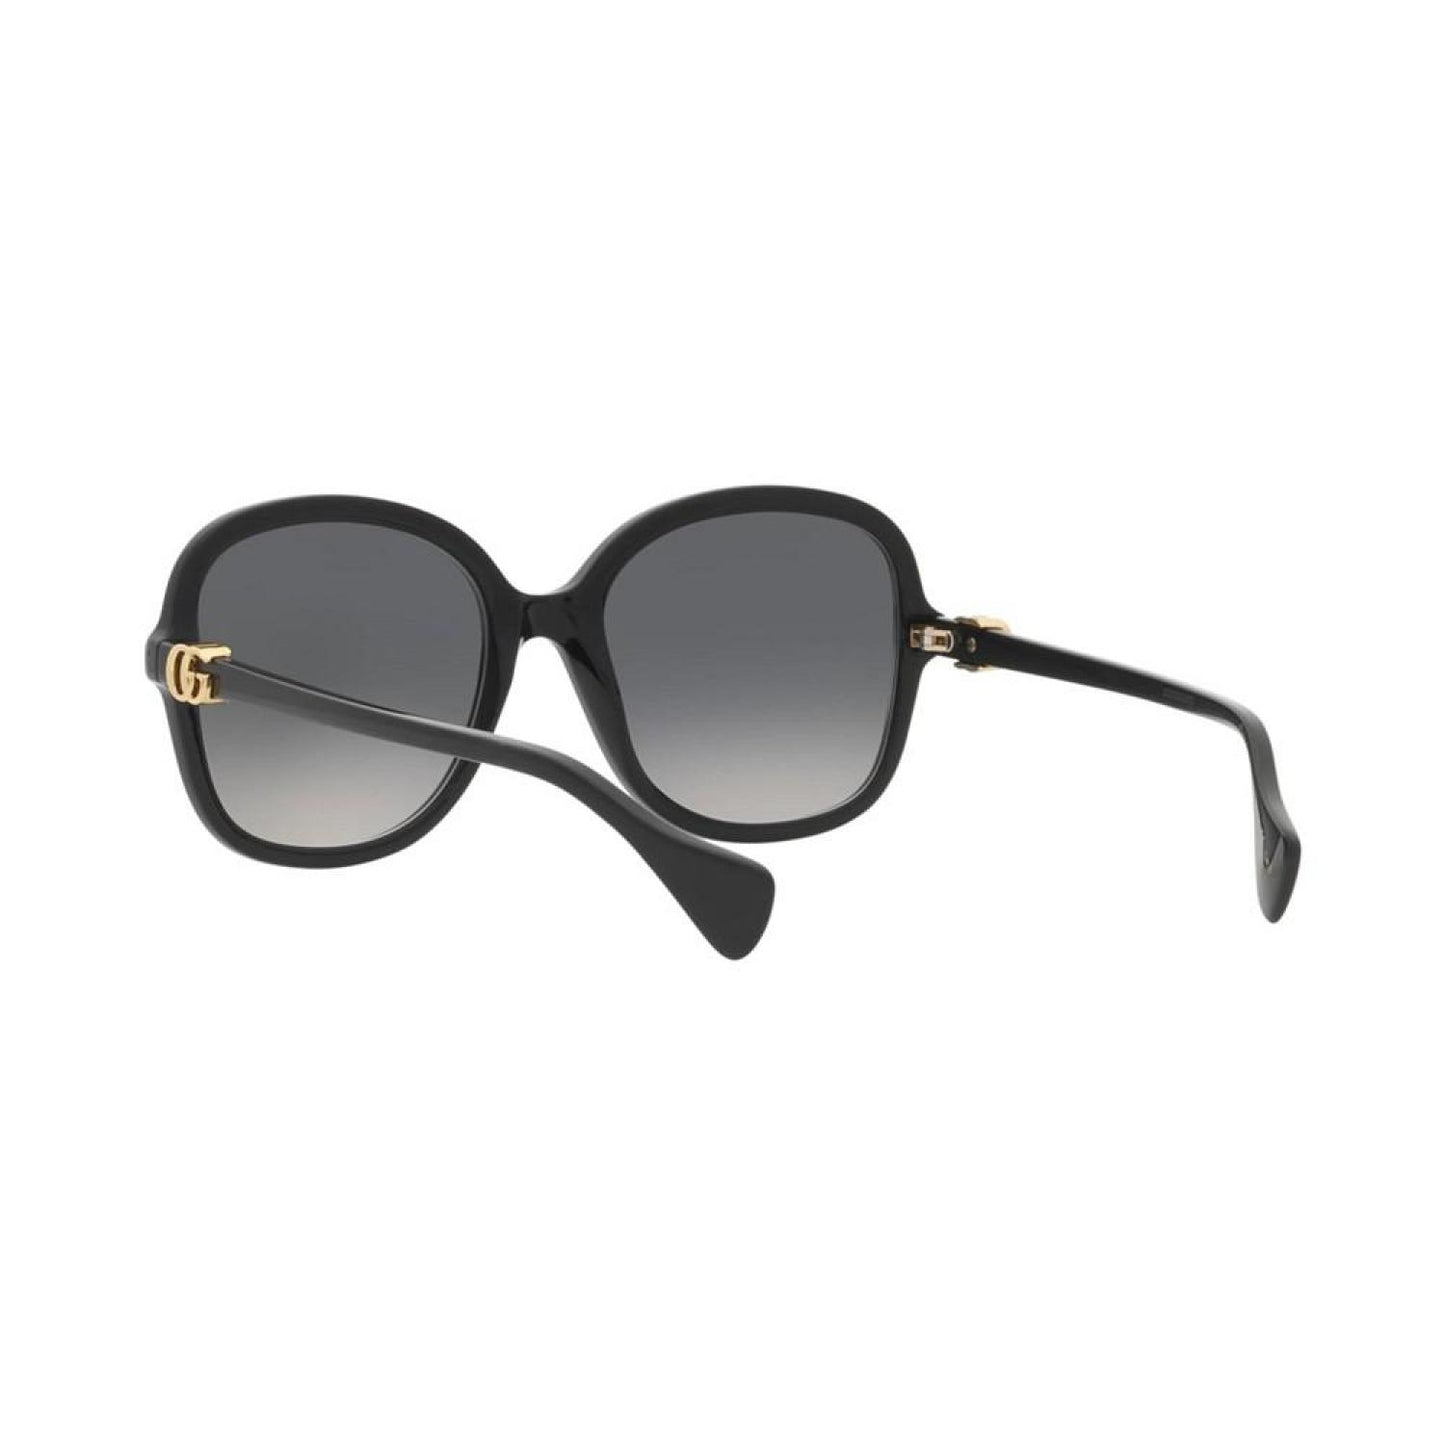 Women's Sunglasses, GG1178S